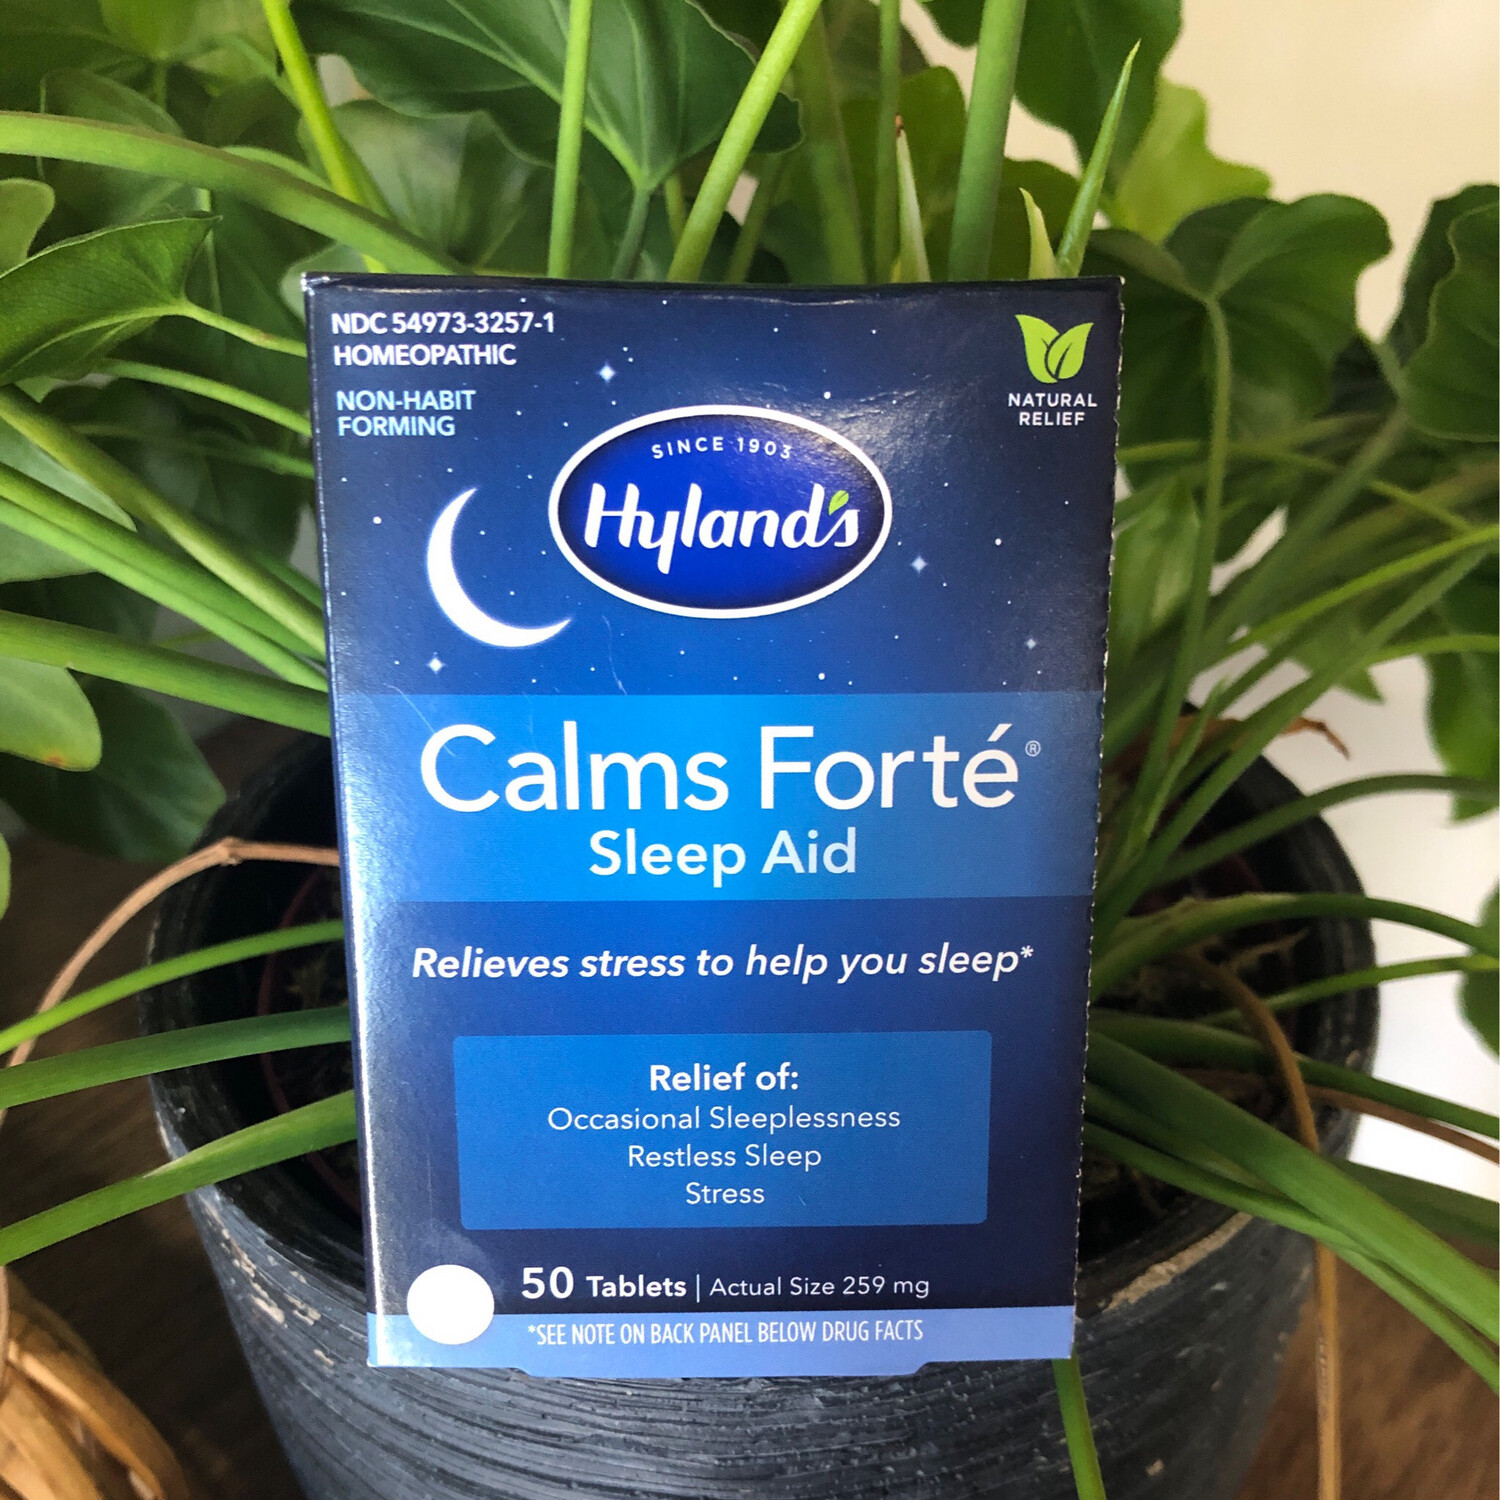 Calms Forte Sleep Aid